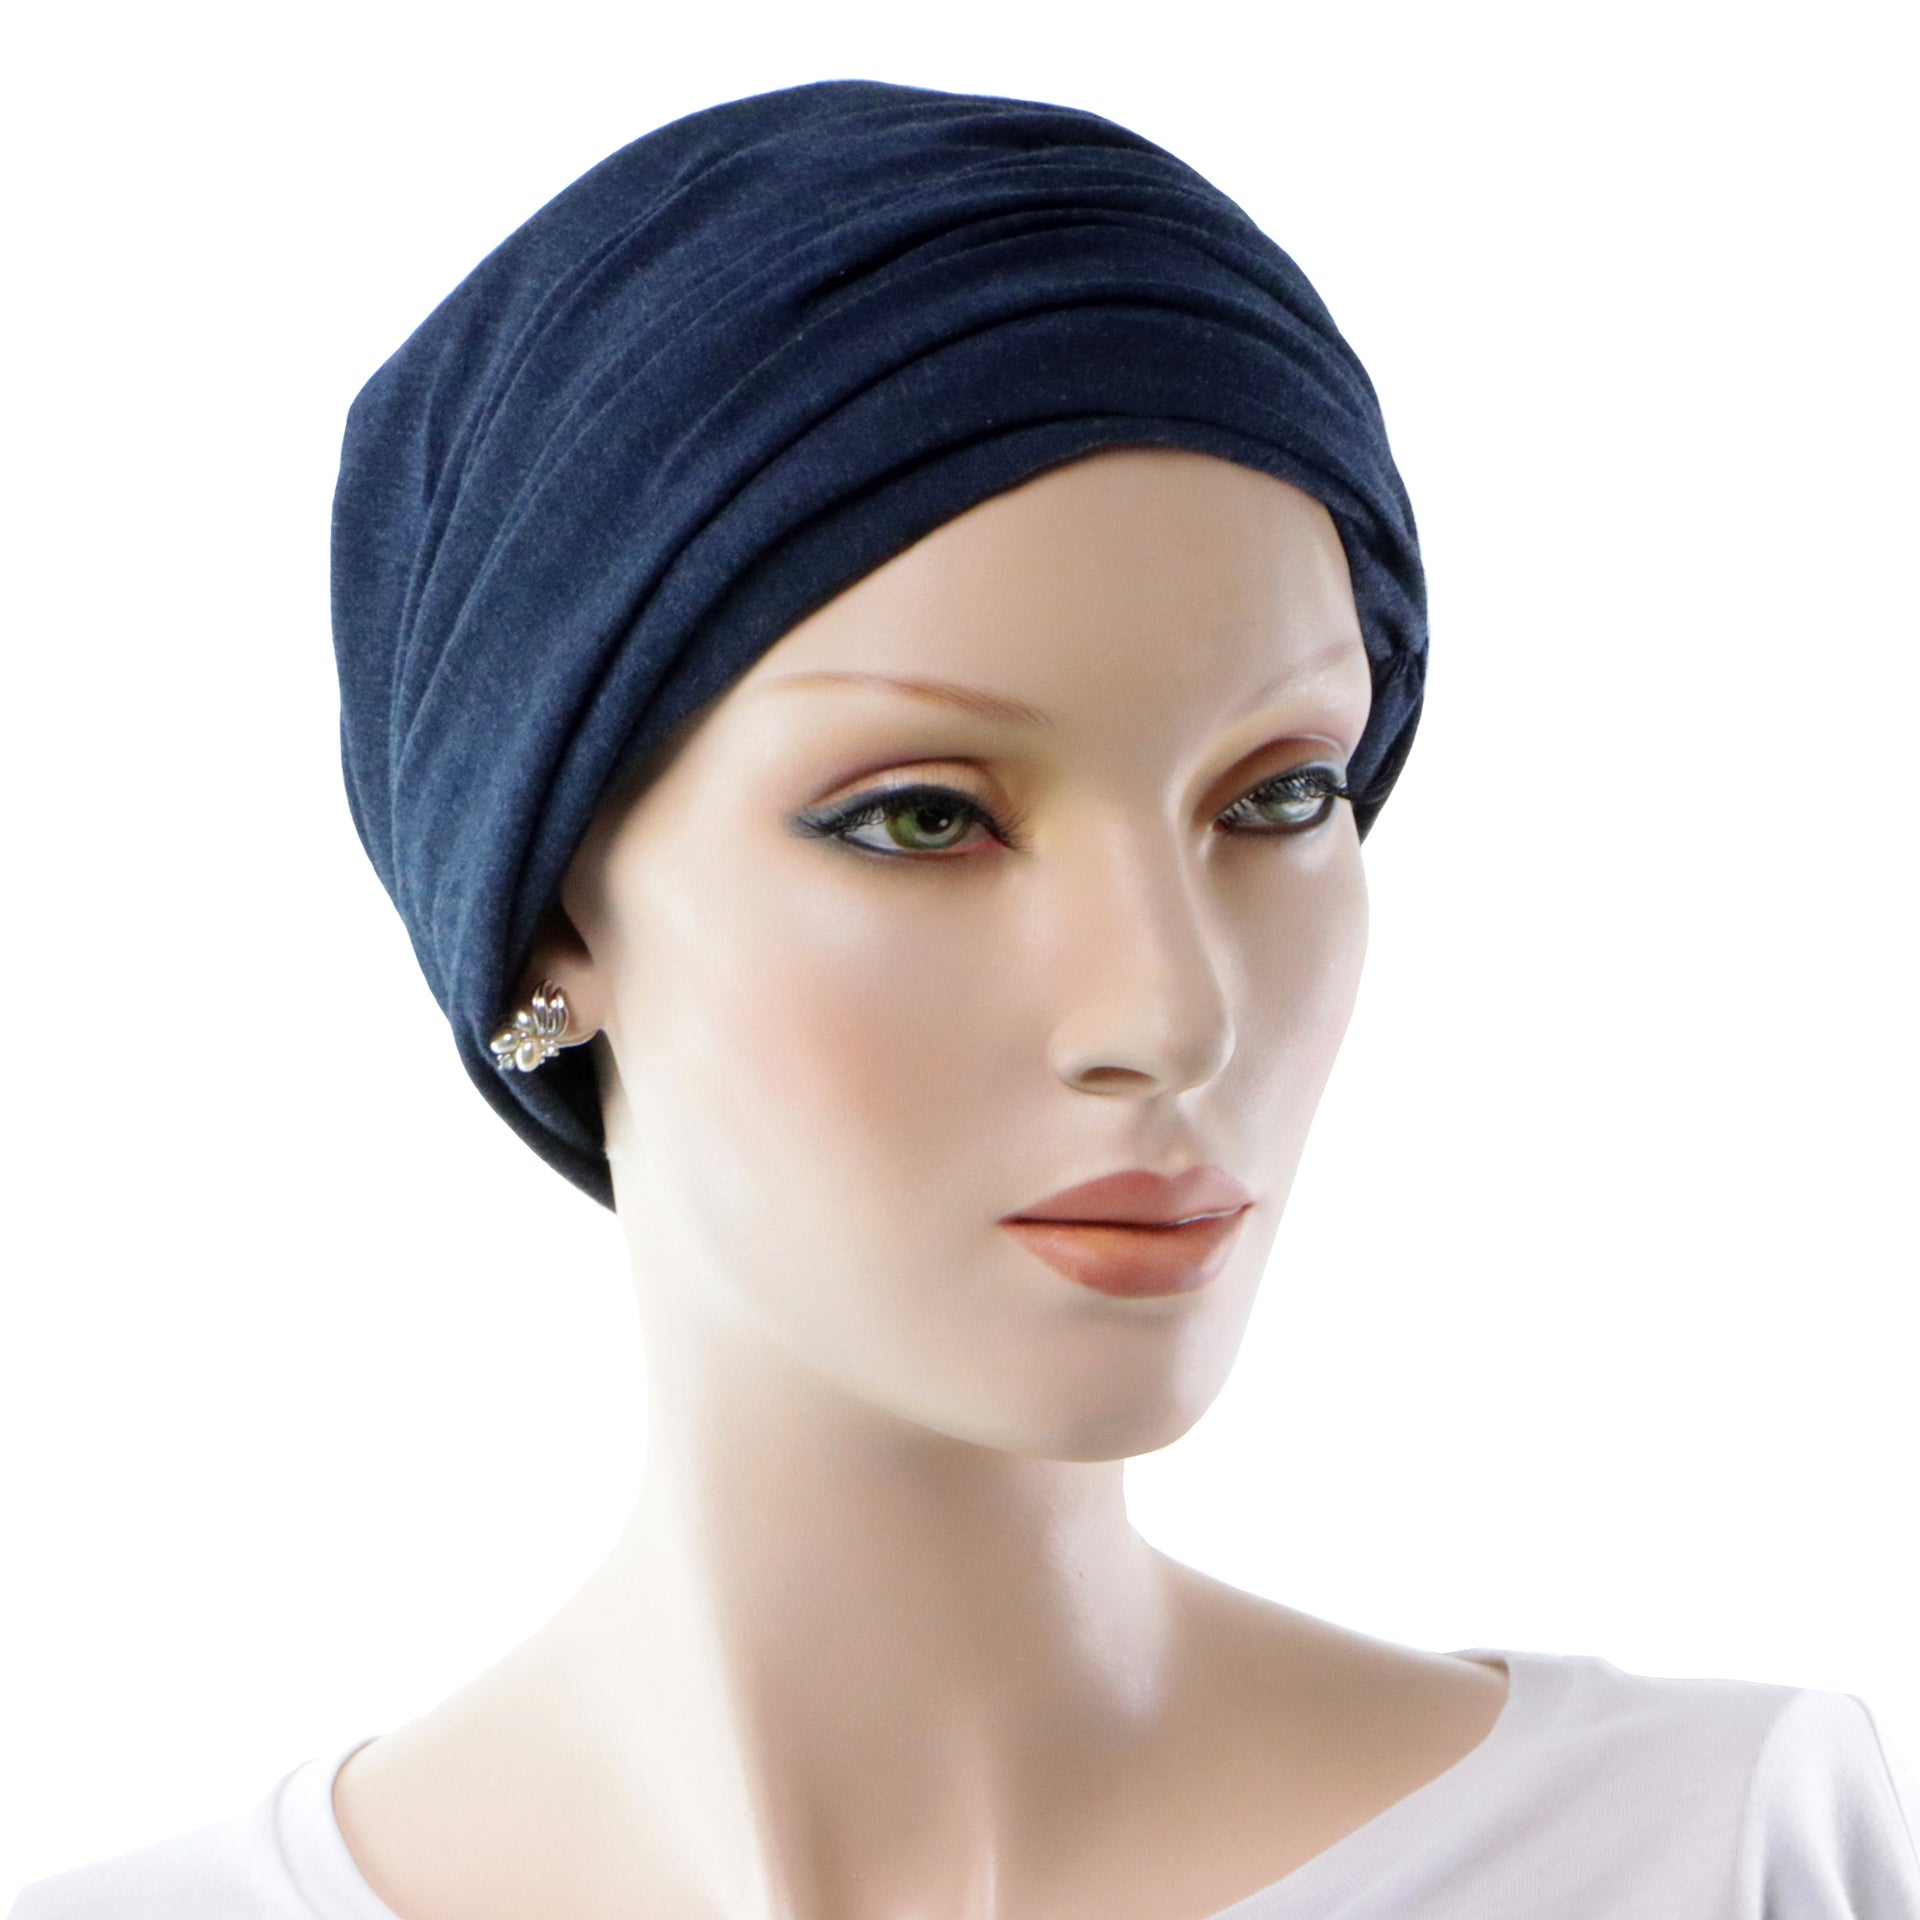 Turban Chimio Avec Volume Convertible En Bonnet Cancer Style Casquette Couleur Bleu Foncé Profil Droit